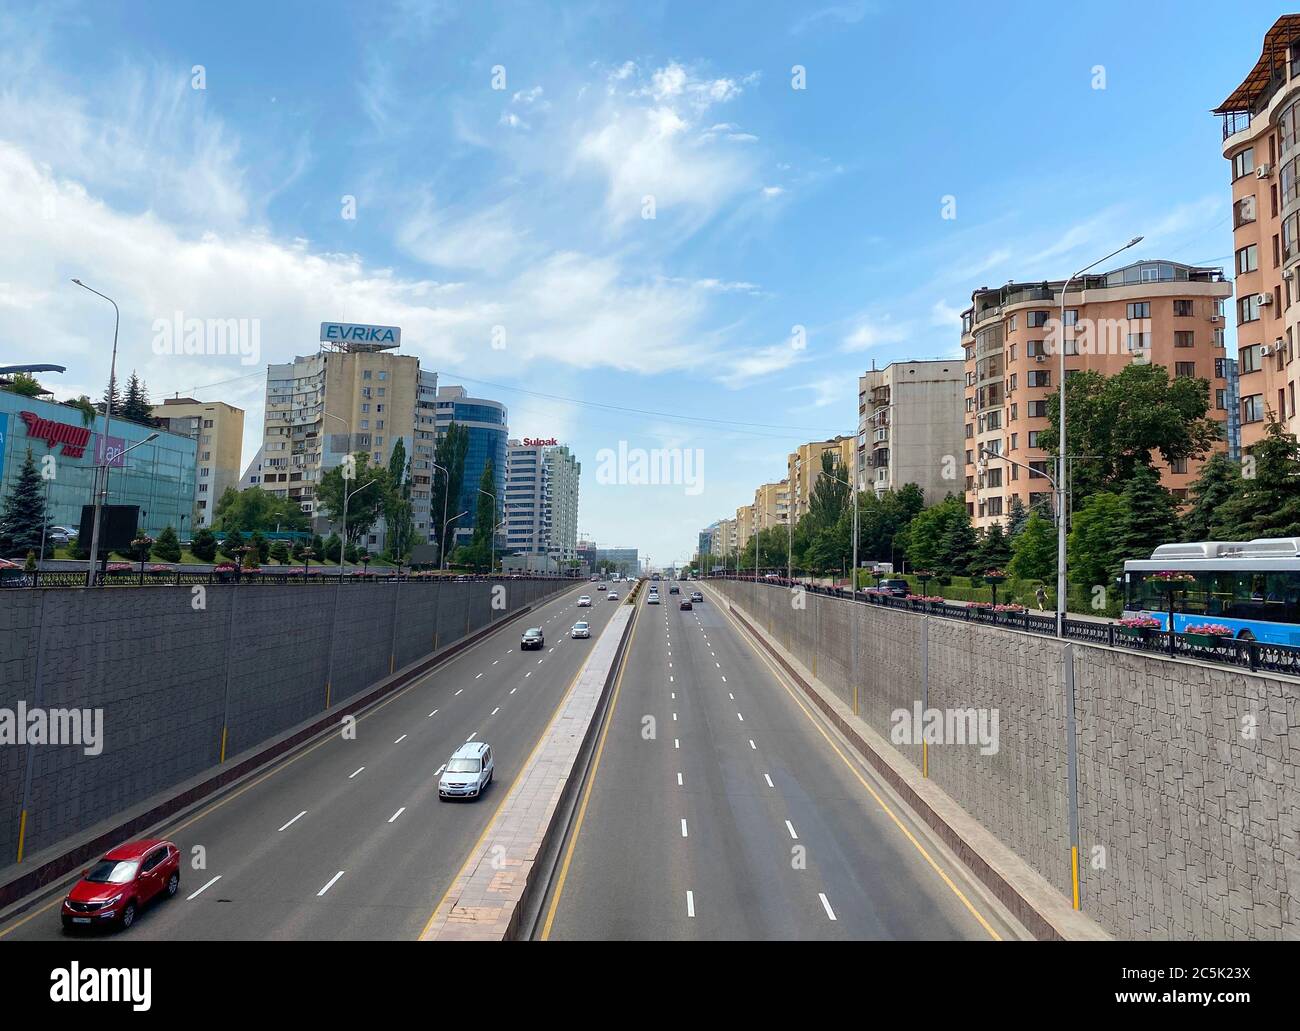 Almaty, Kazakhstan - June 1, 2020: View from Al-Farabi avenue, it is one of the main roads in the city of Almaty Stock Photo